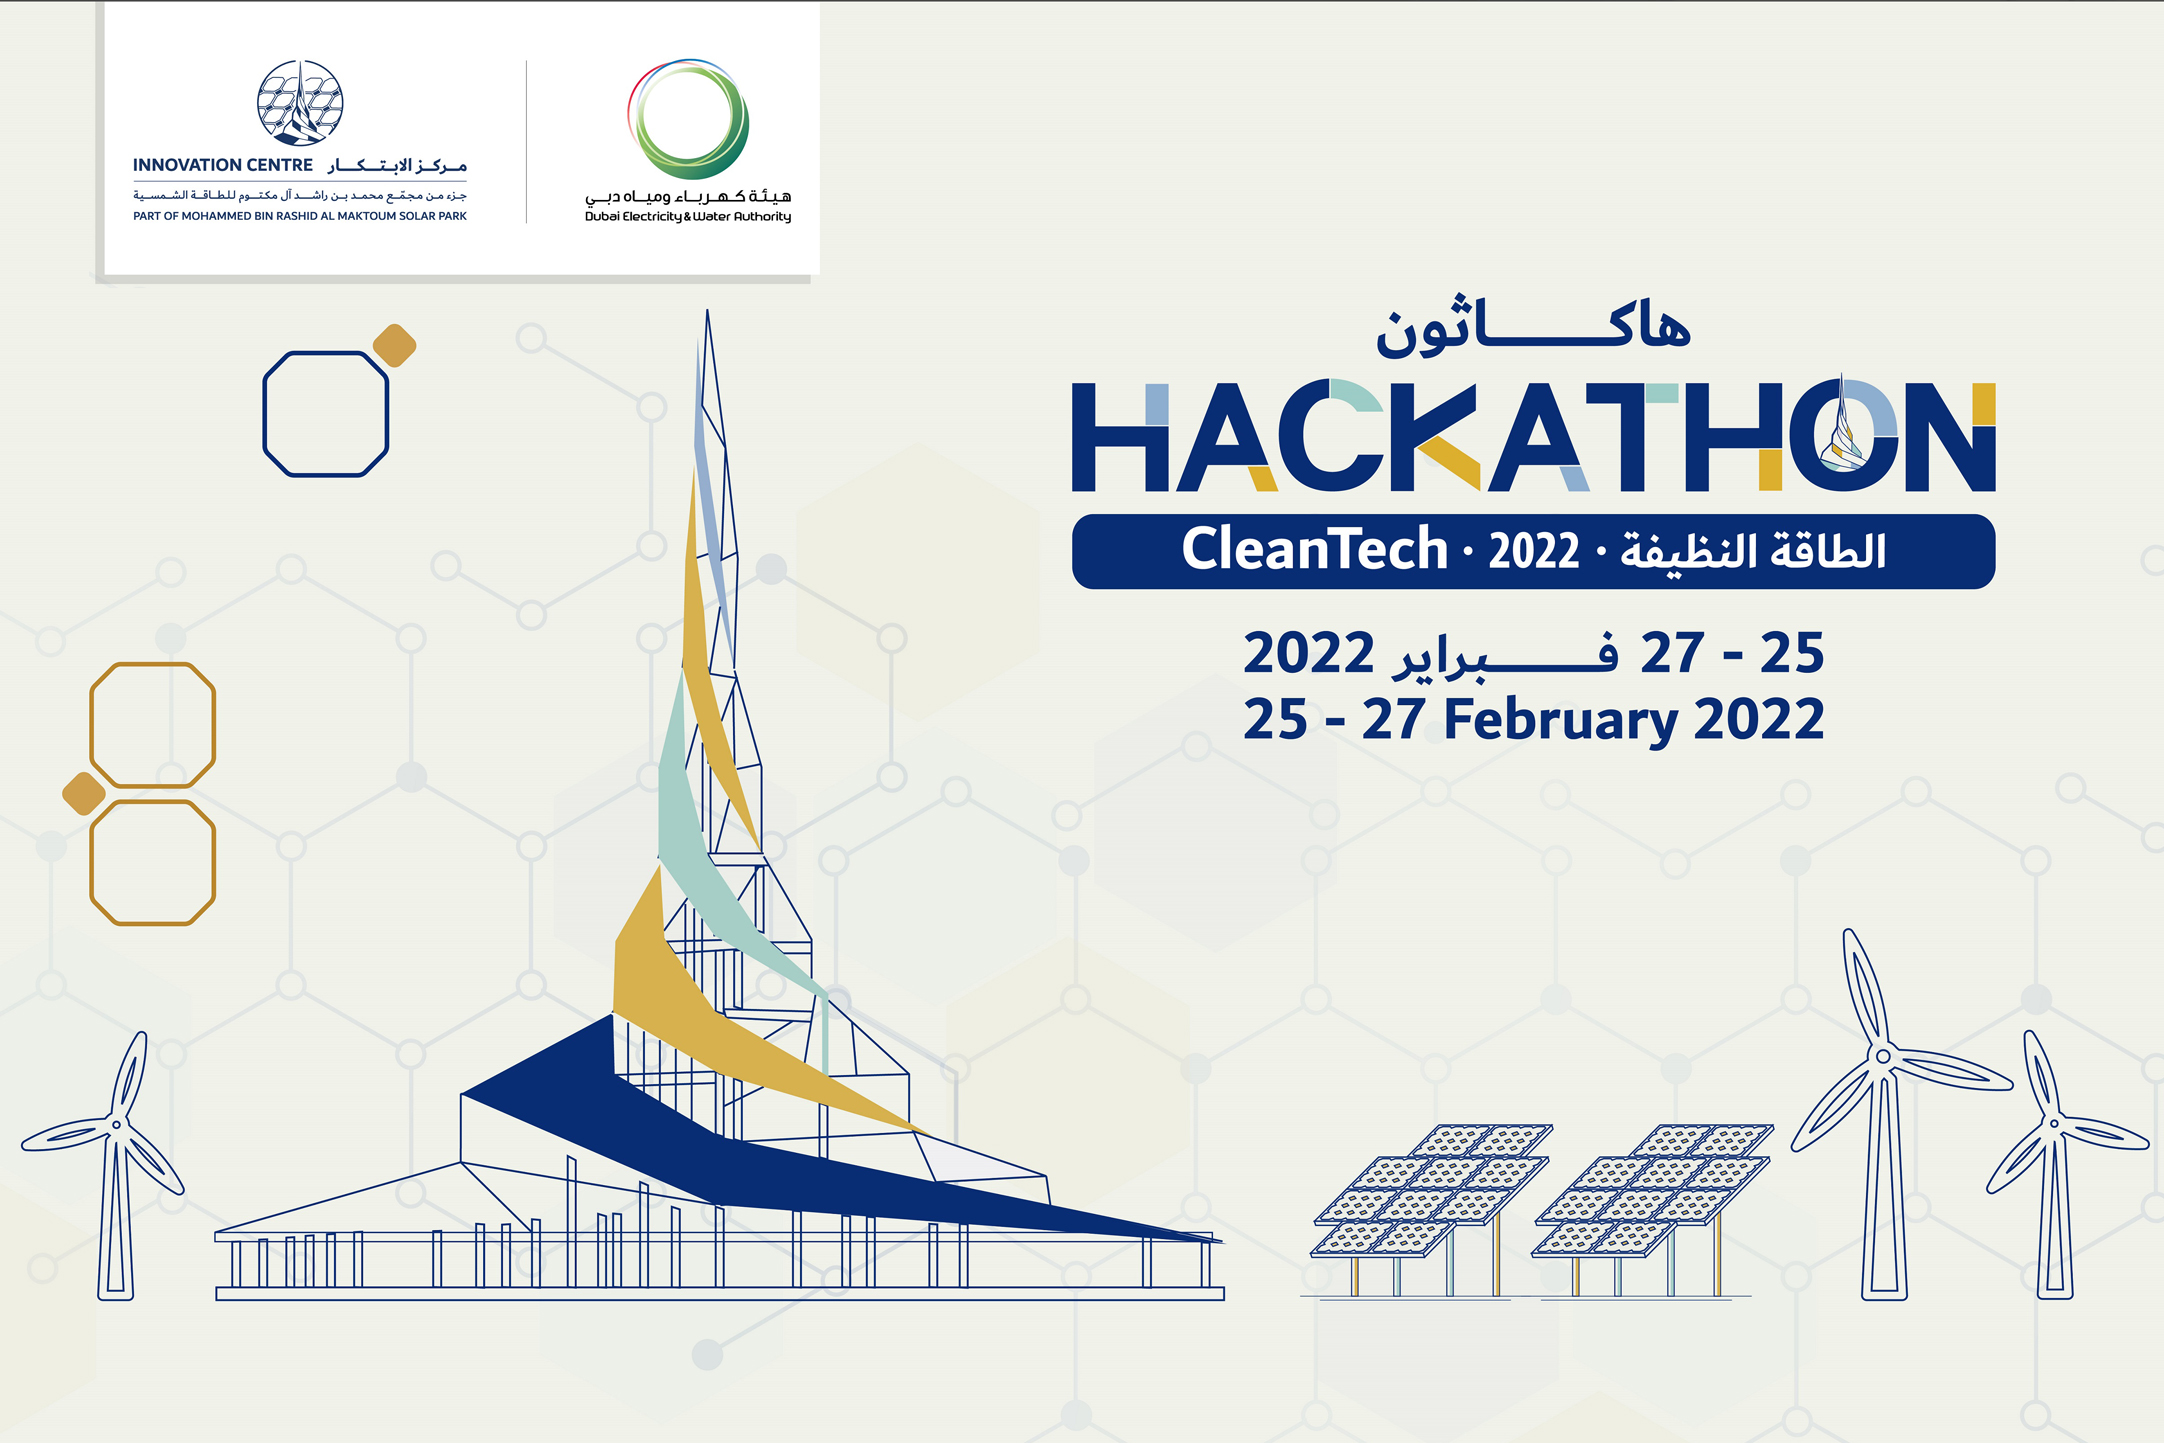 مركز الابتكار التابع لهيئة كهرباء ومياه دبي يدعو المختصين للمشاركة في "هاكاثون الطاقة النظيفة"